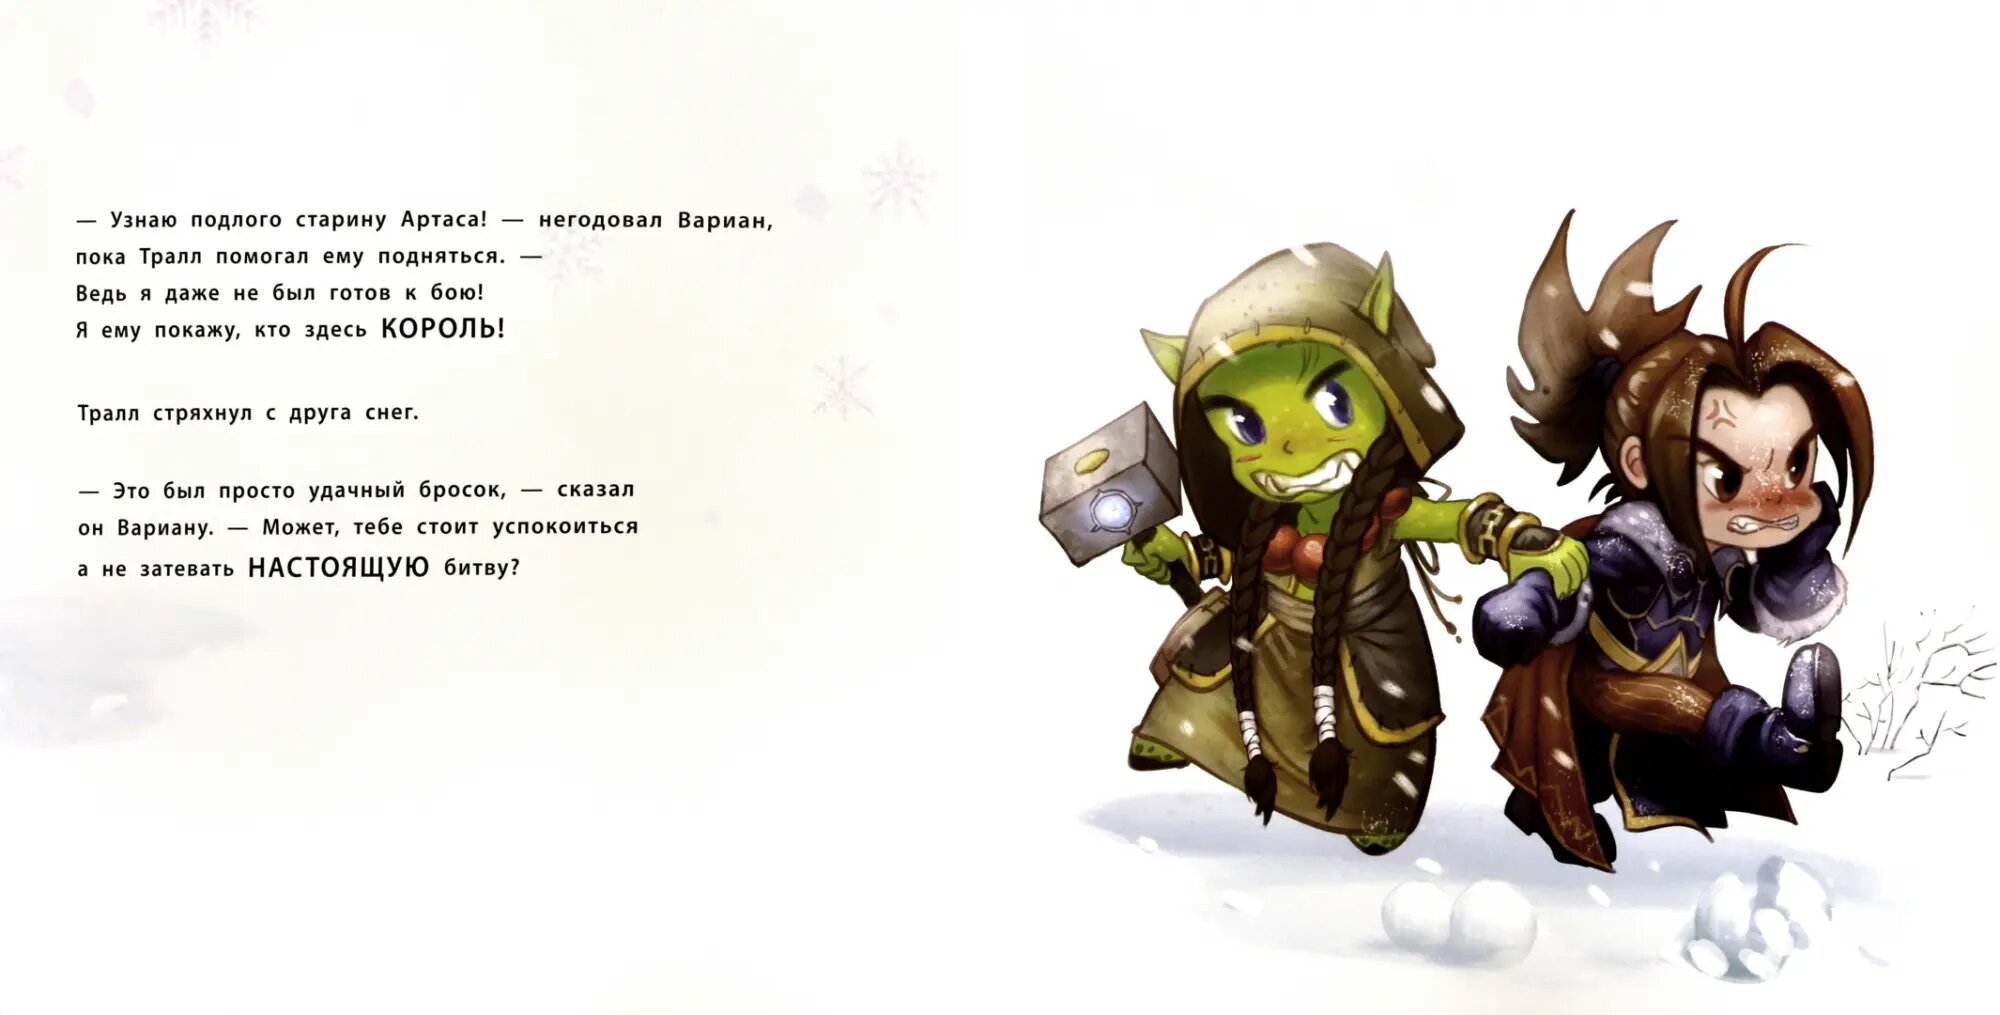 Снежный бой: Сказка про Warcraft - фото №7